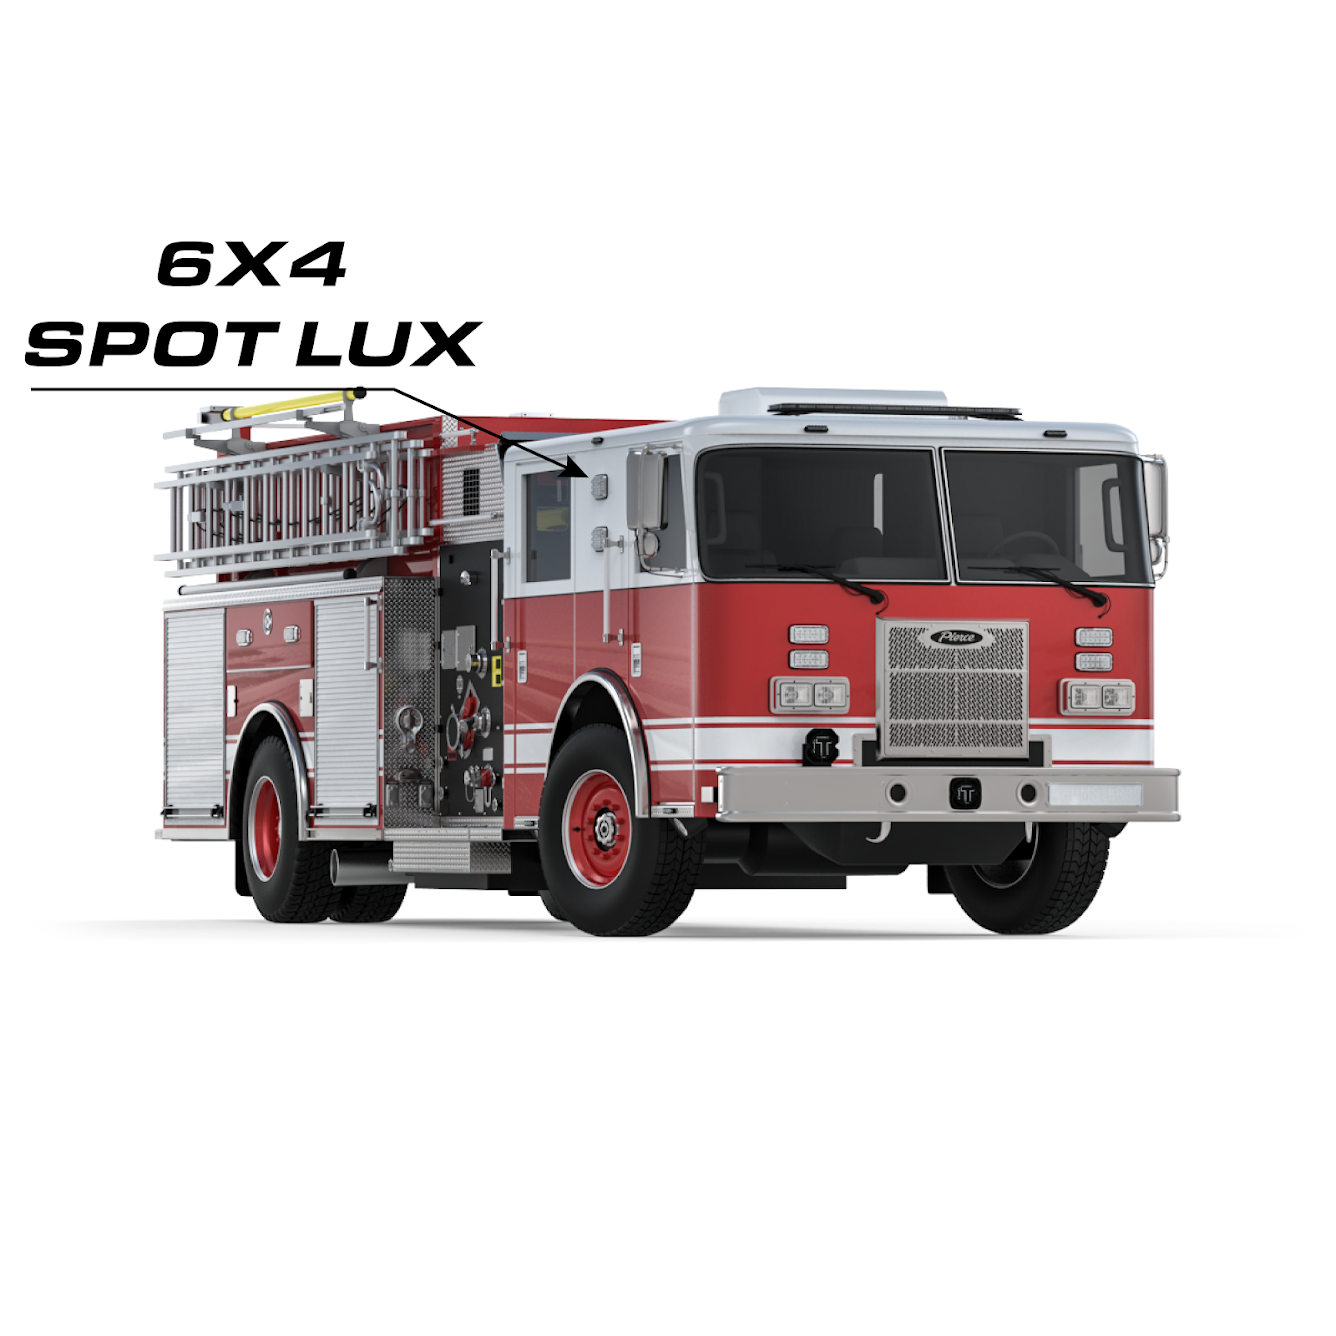 Spot Lux 6x4